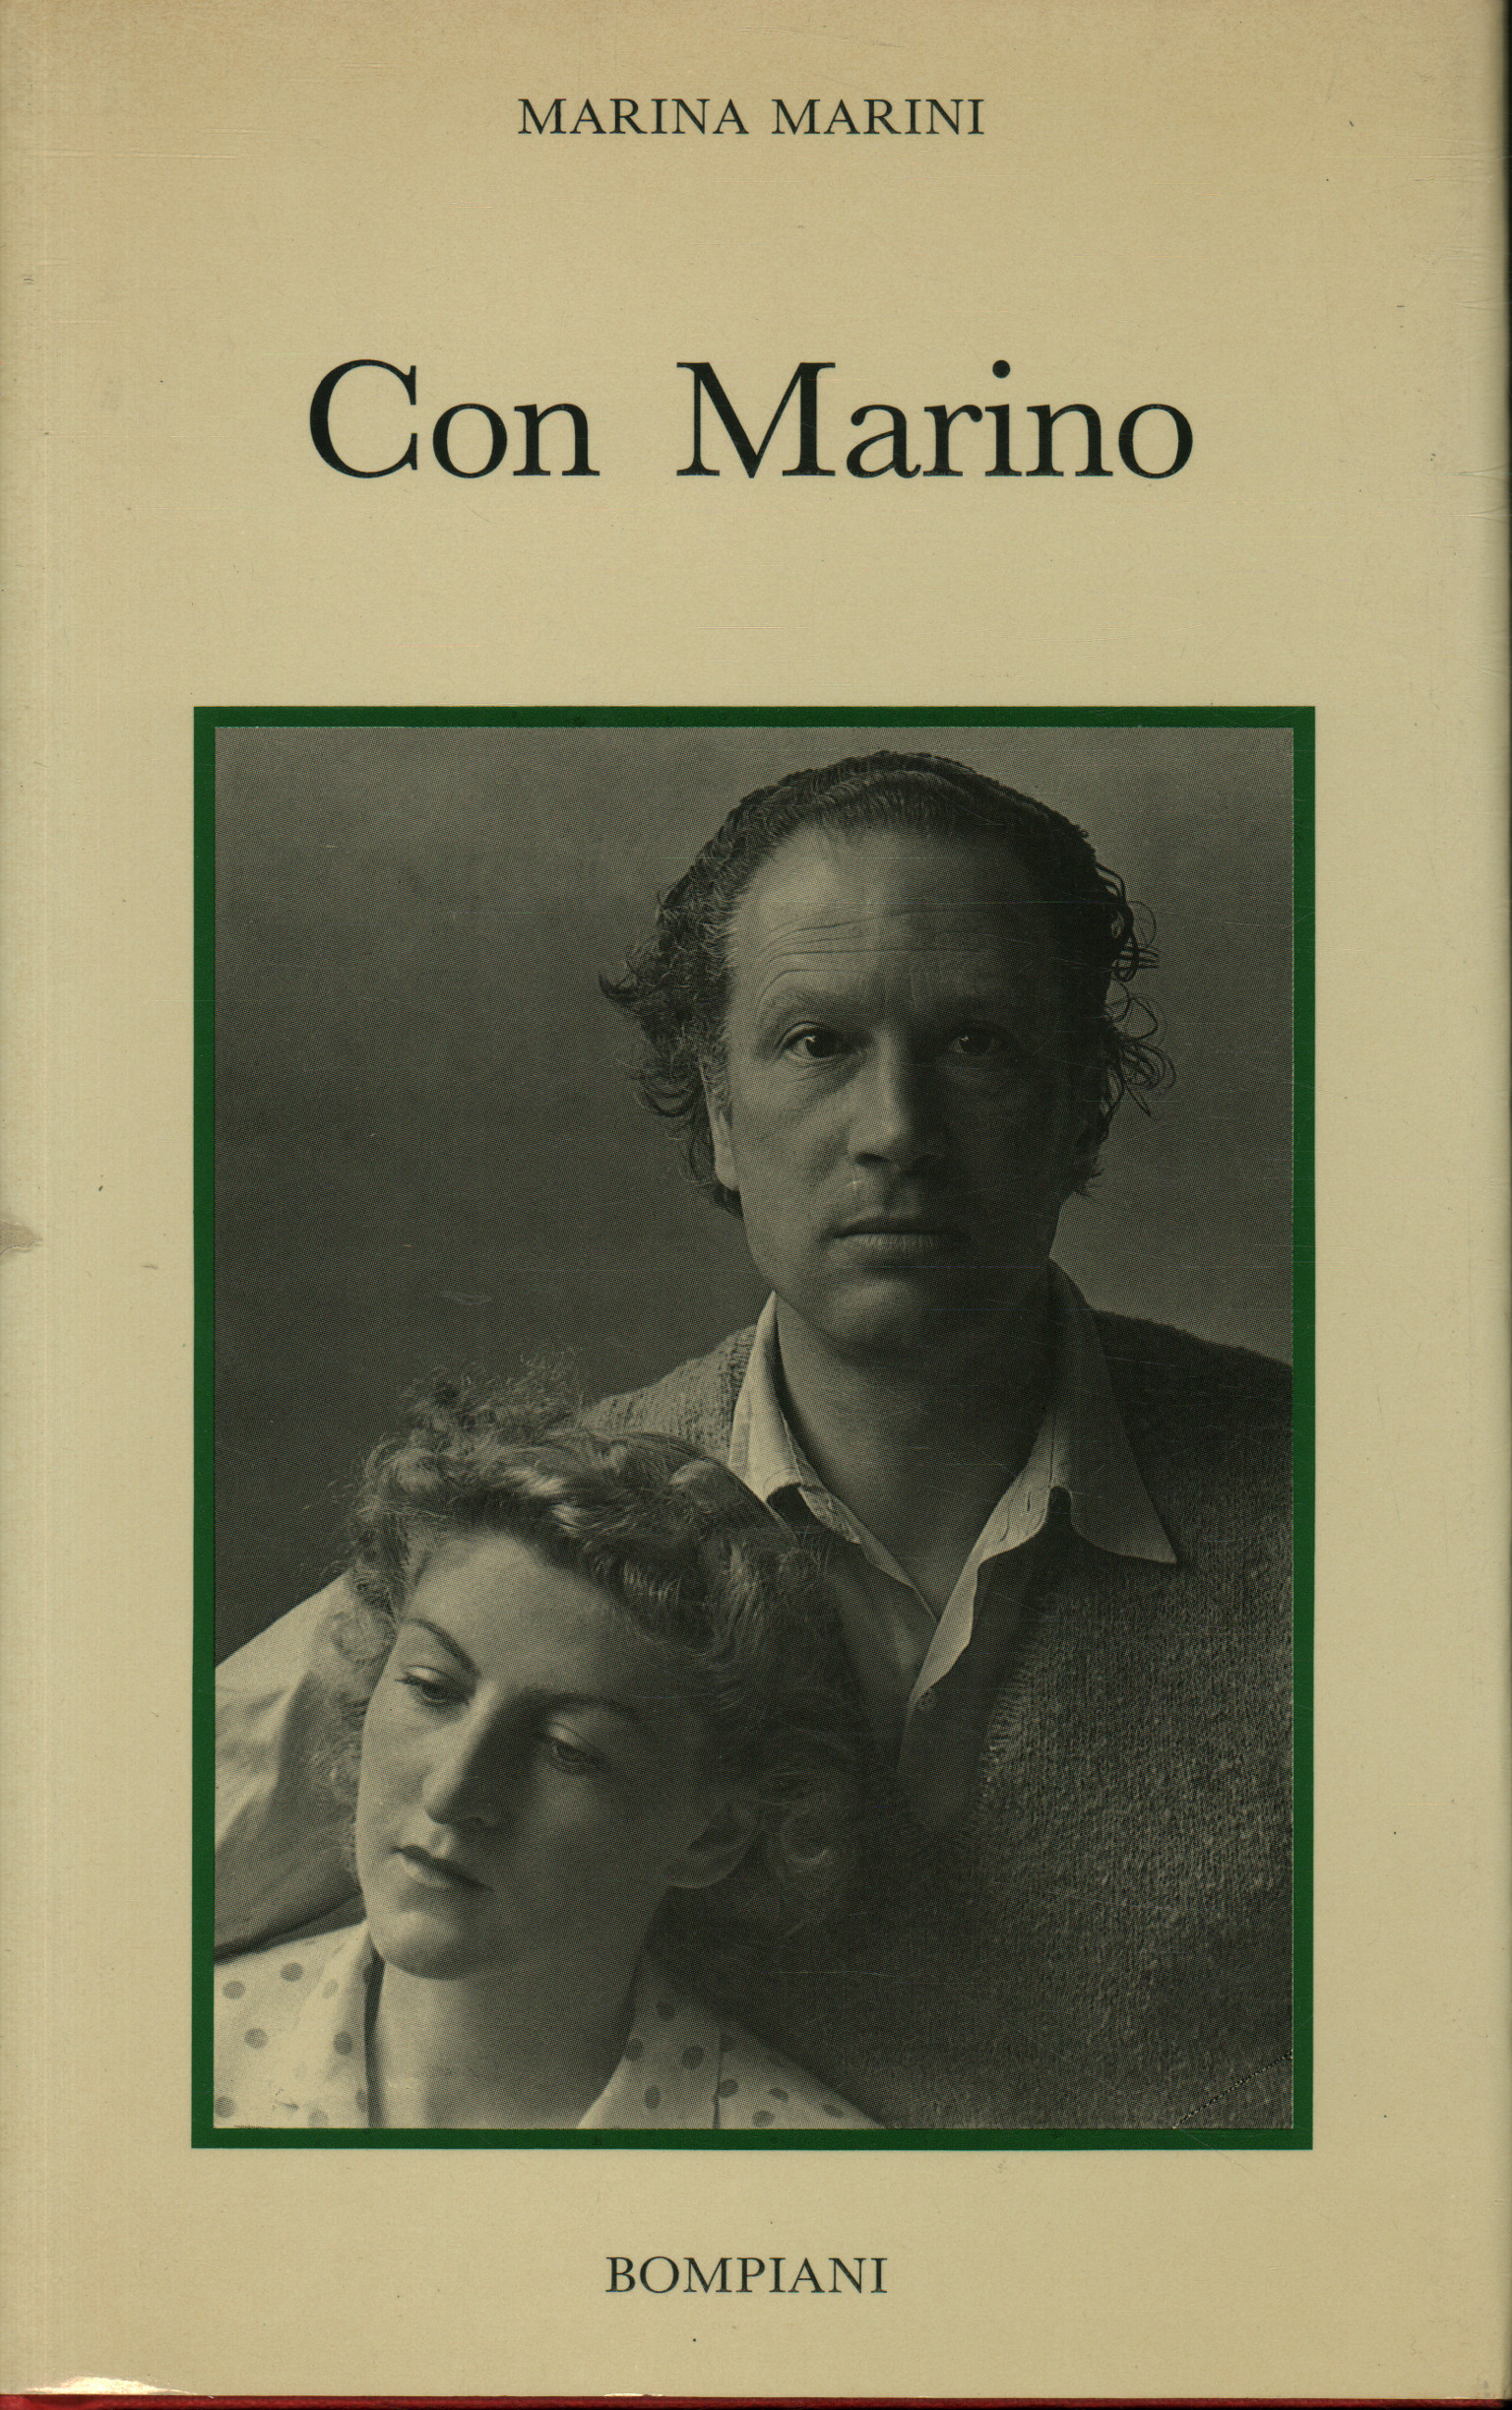 Con Marino, Marina Marini